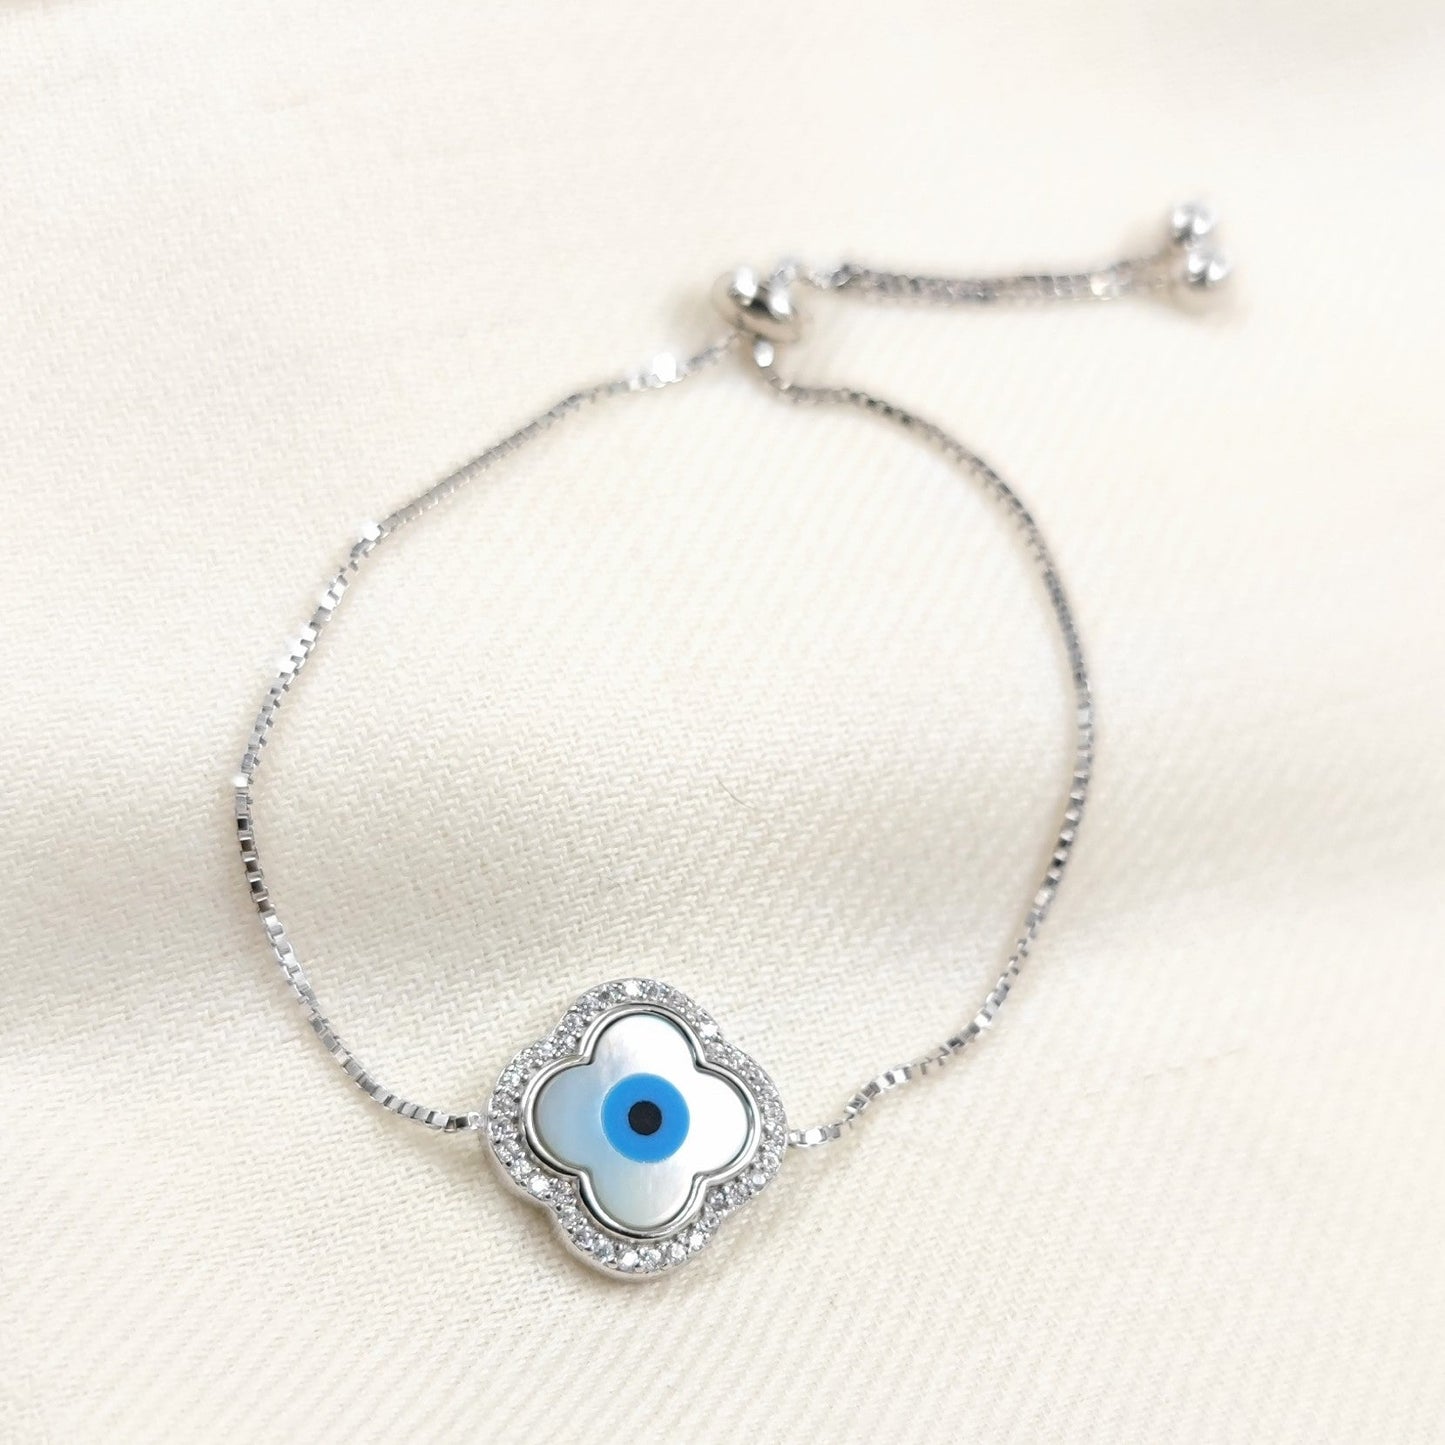 Silver Jewelry Bracelets by Jauhri 92.5 Silver - Slider Evil Eye Petal Bracelet